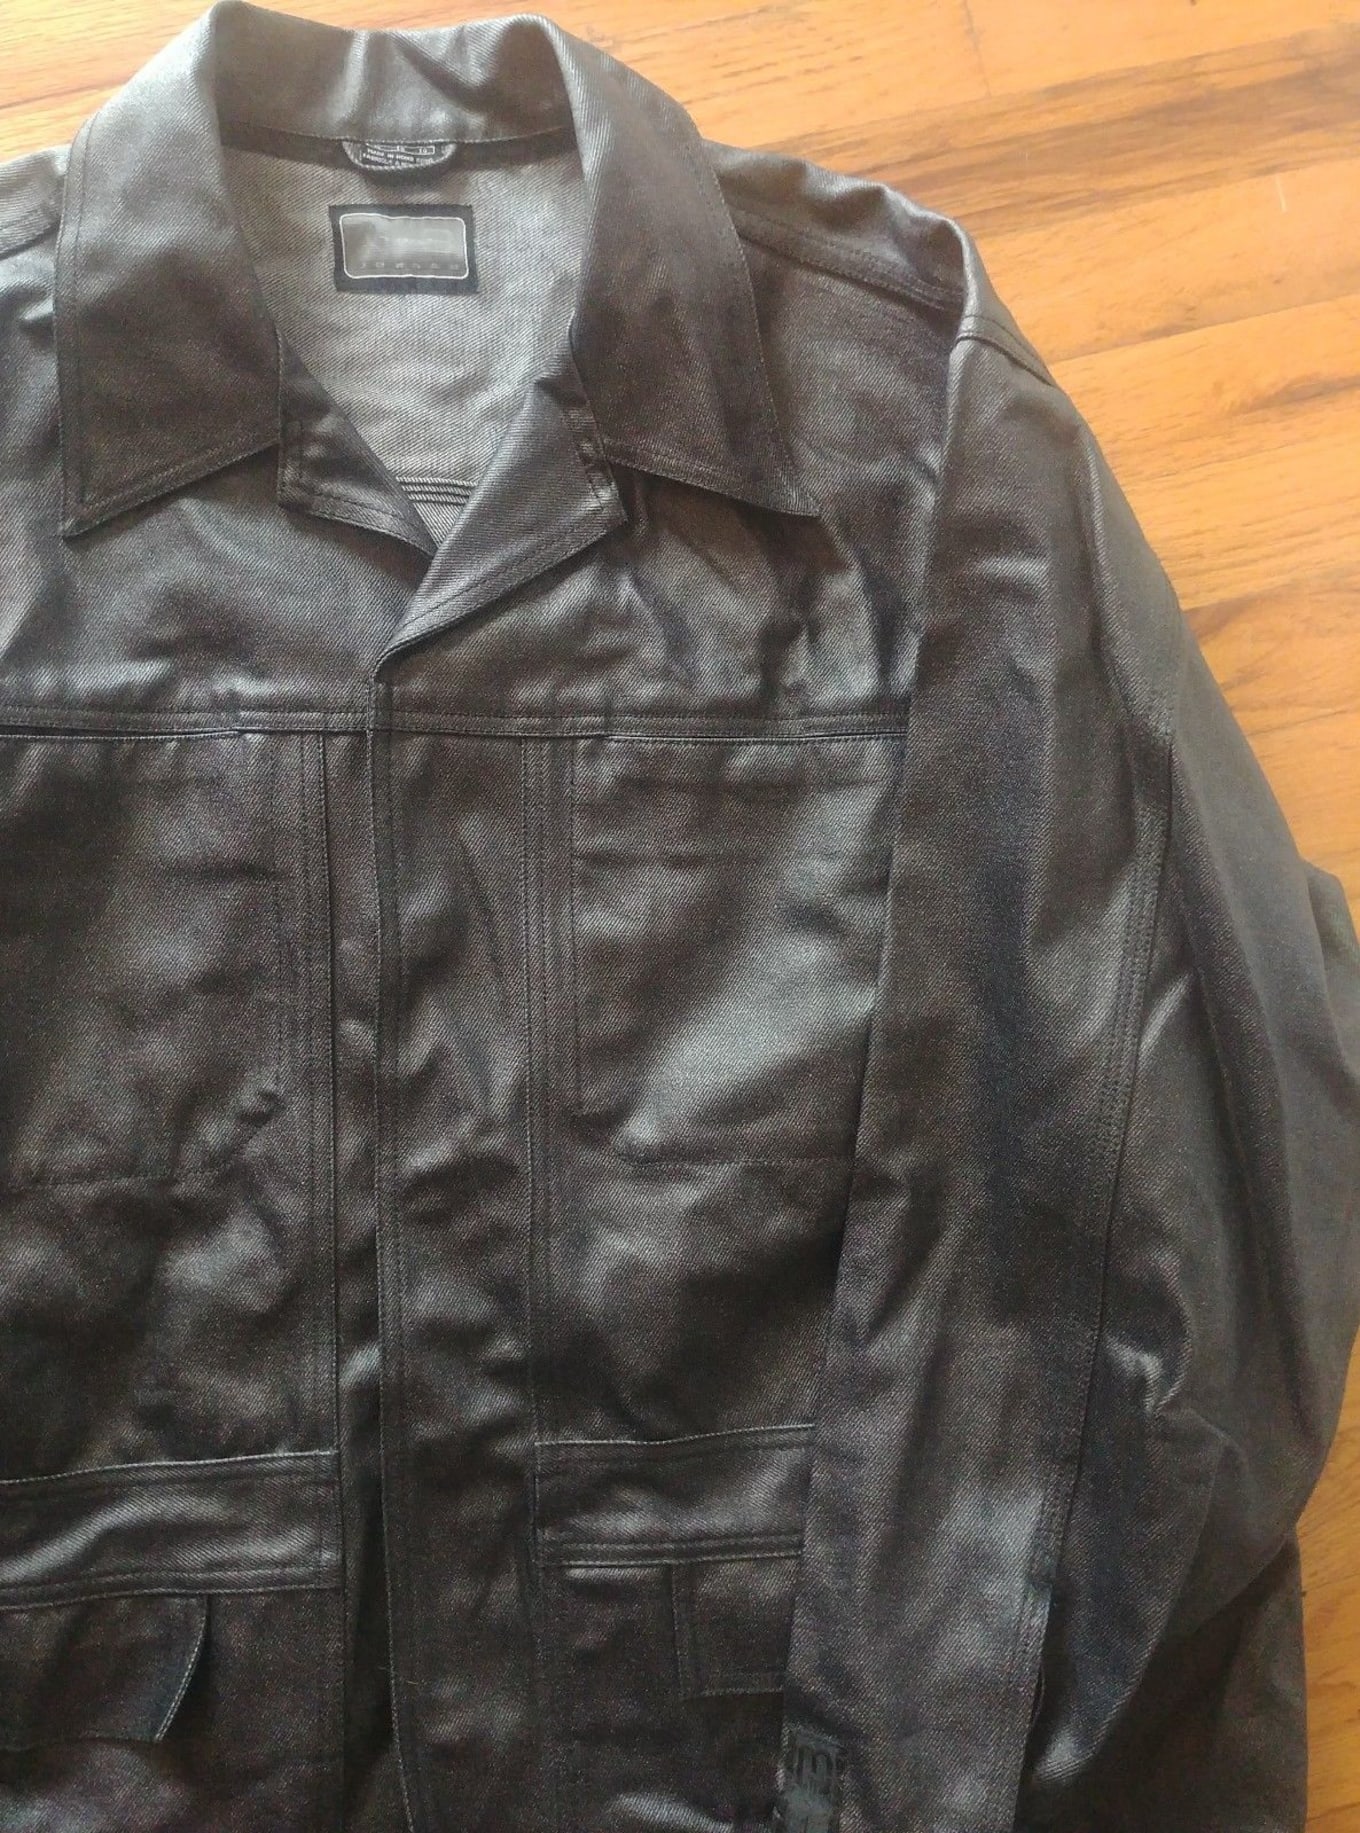 Jordan two3 leather jacket 3 button size XL - lagoagrio.gob.ec